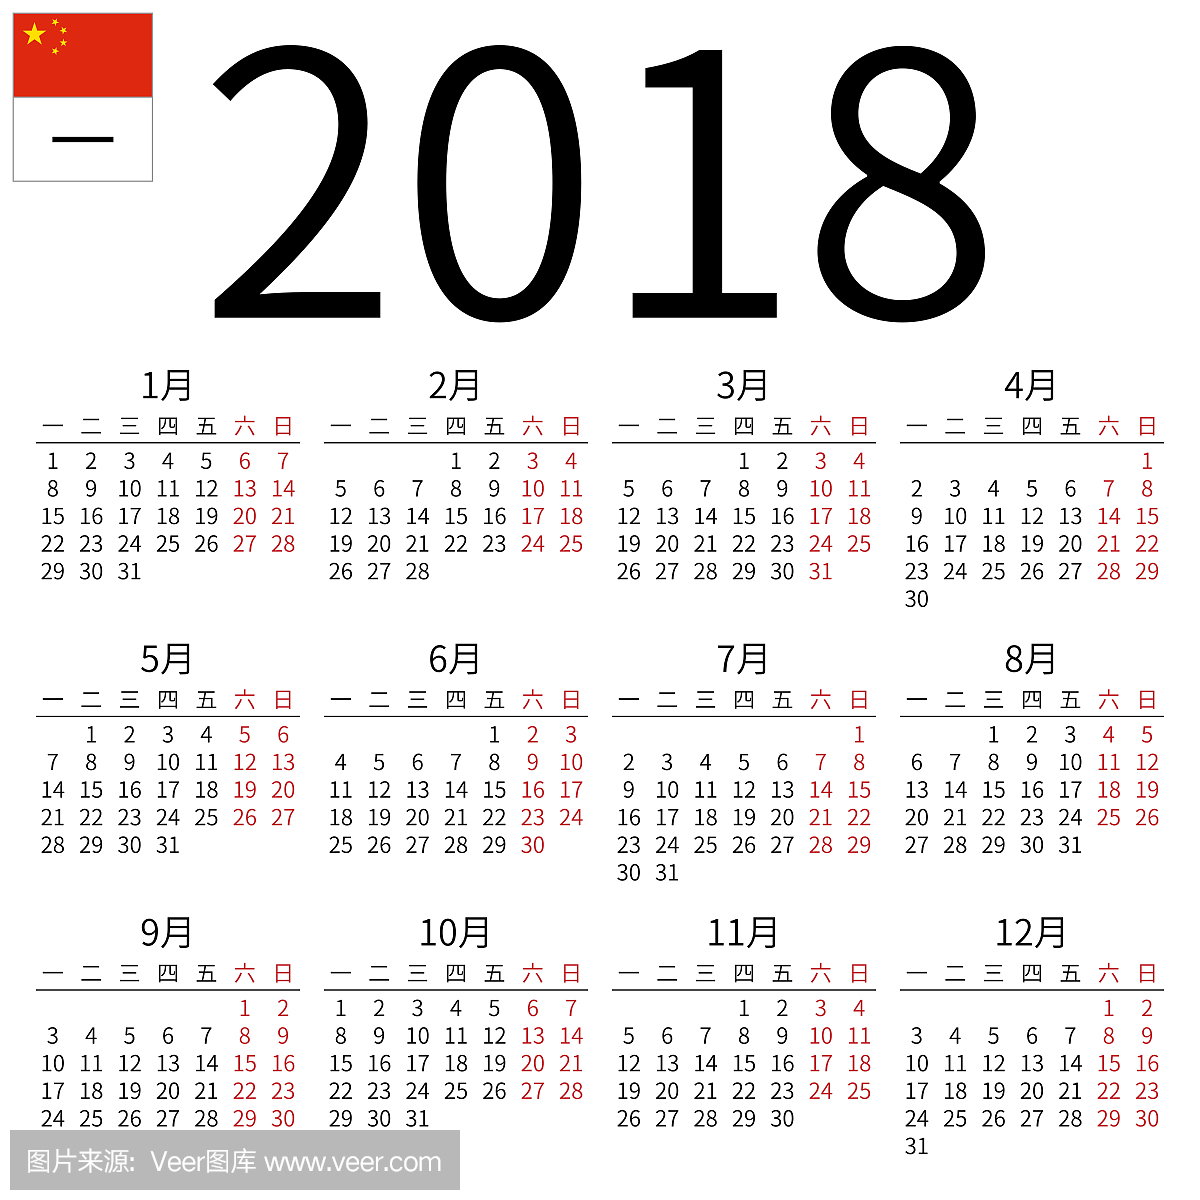 2018年日历,中文,星期一